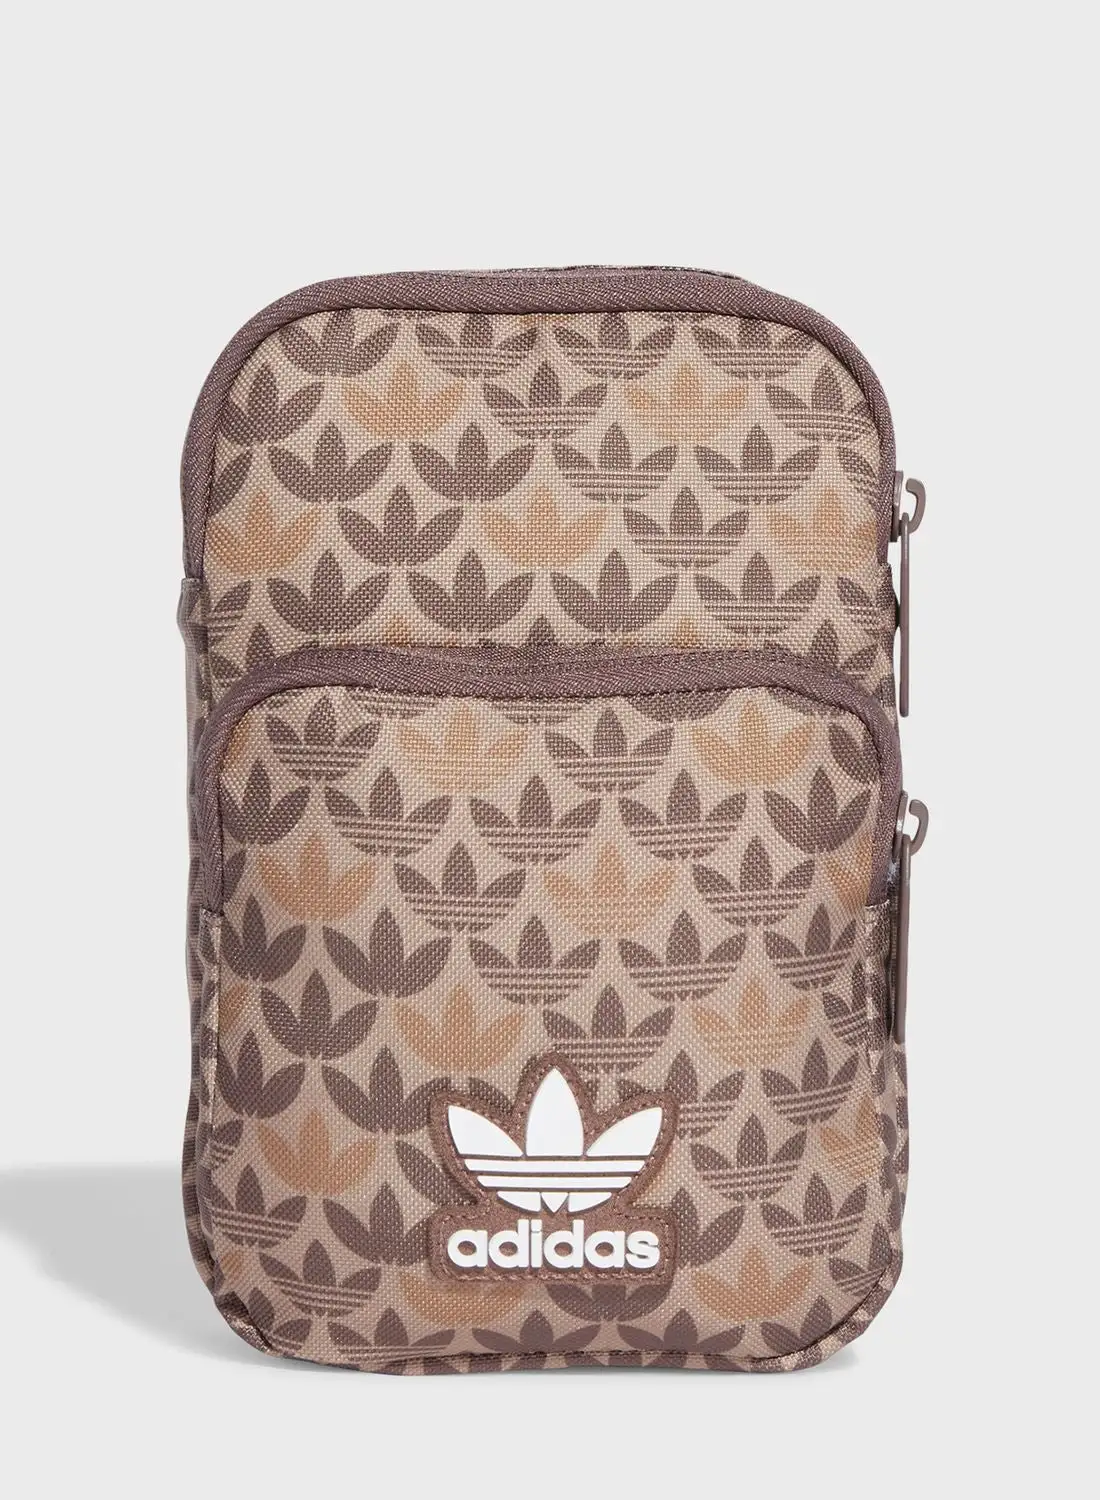 adidas Originals Mono Festival Backpack